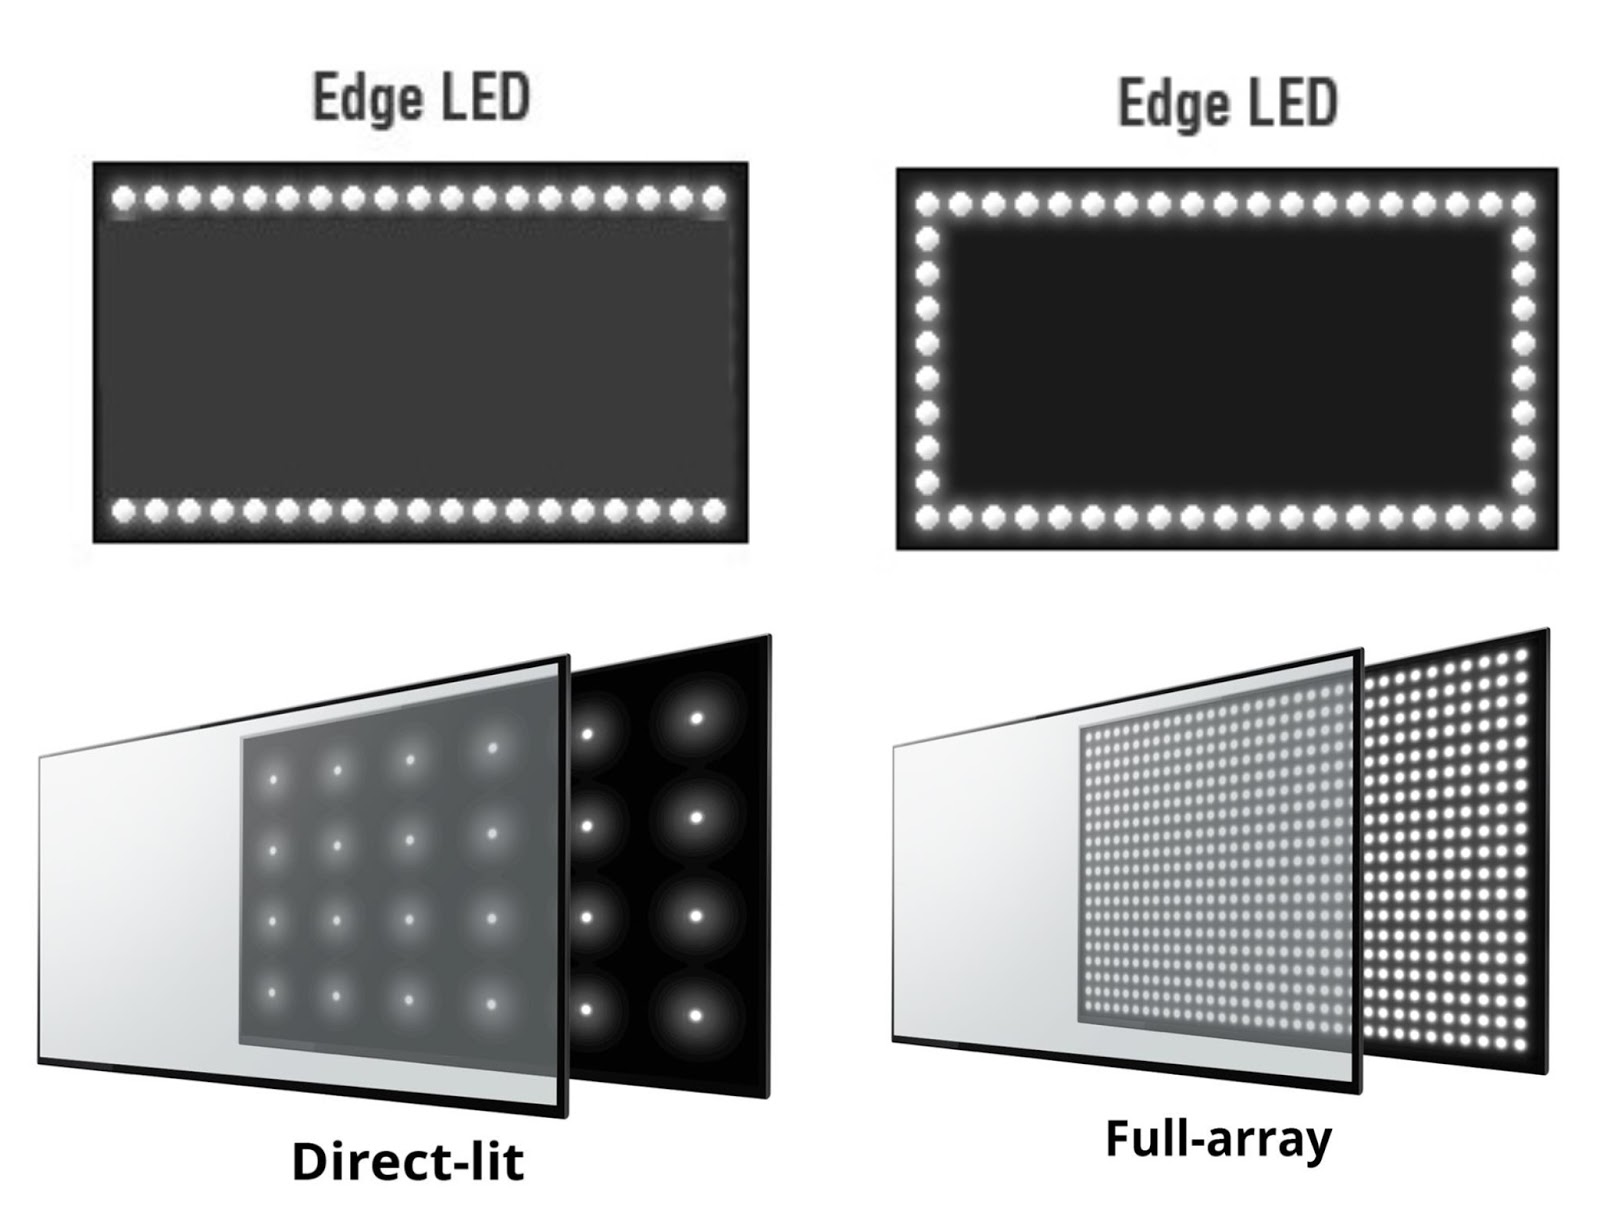 Kanon biologi bag Edge-Lit LCDs VS Direct-lit LCDs | ELED TV VS DLED TV : Which is better? |  LCD Vs LED?